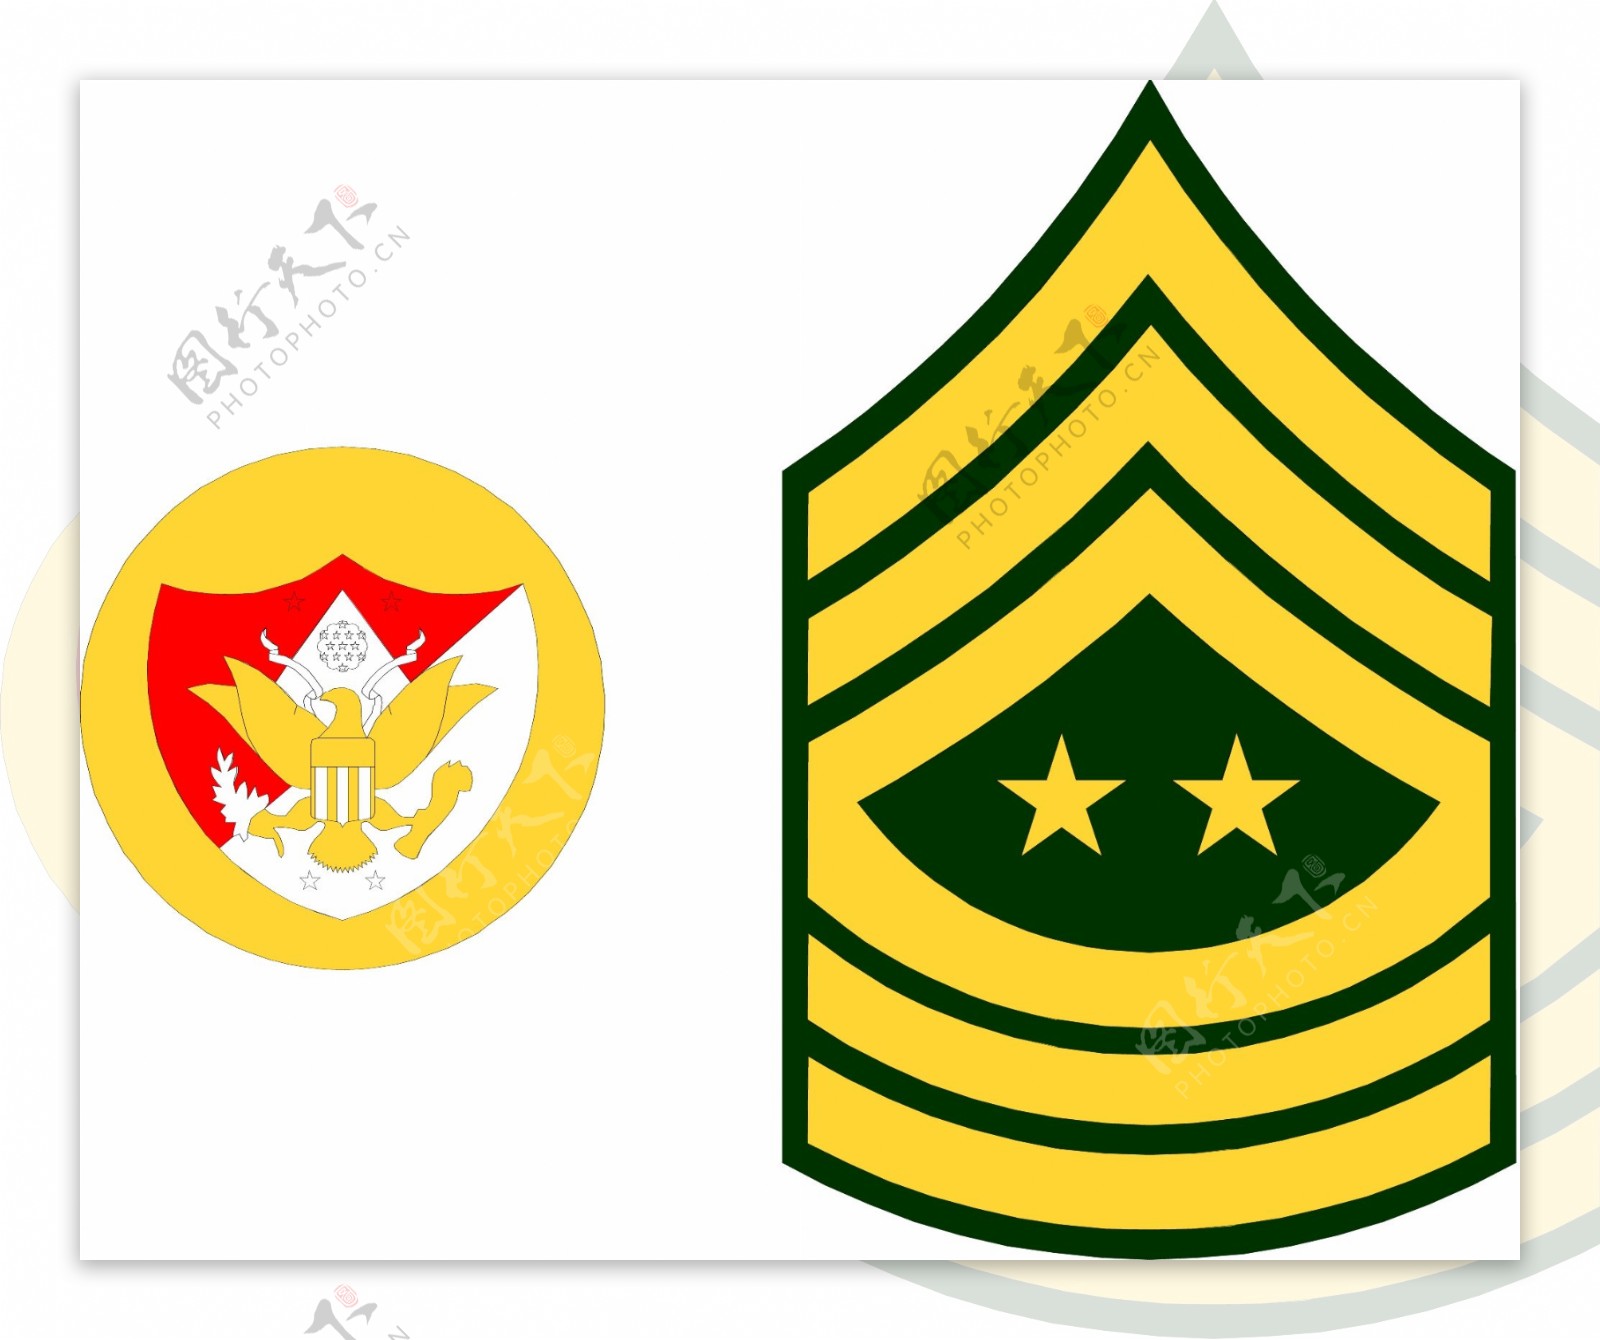 军队徽章